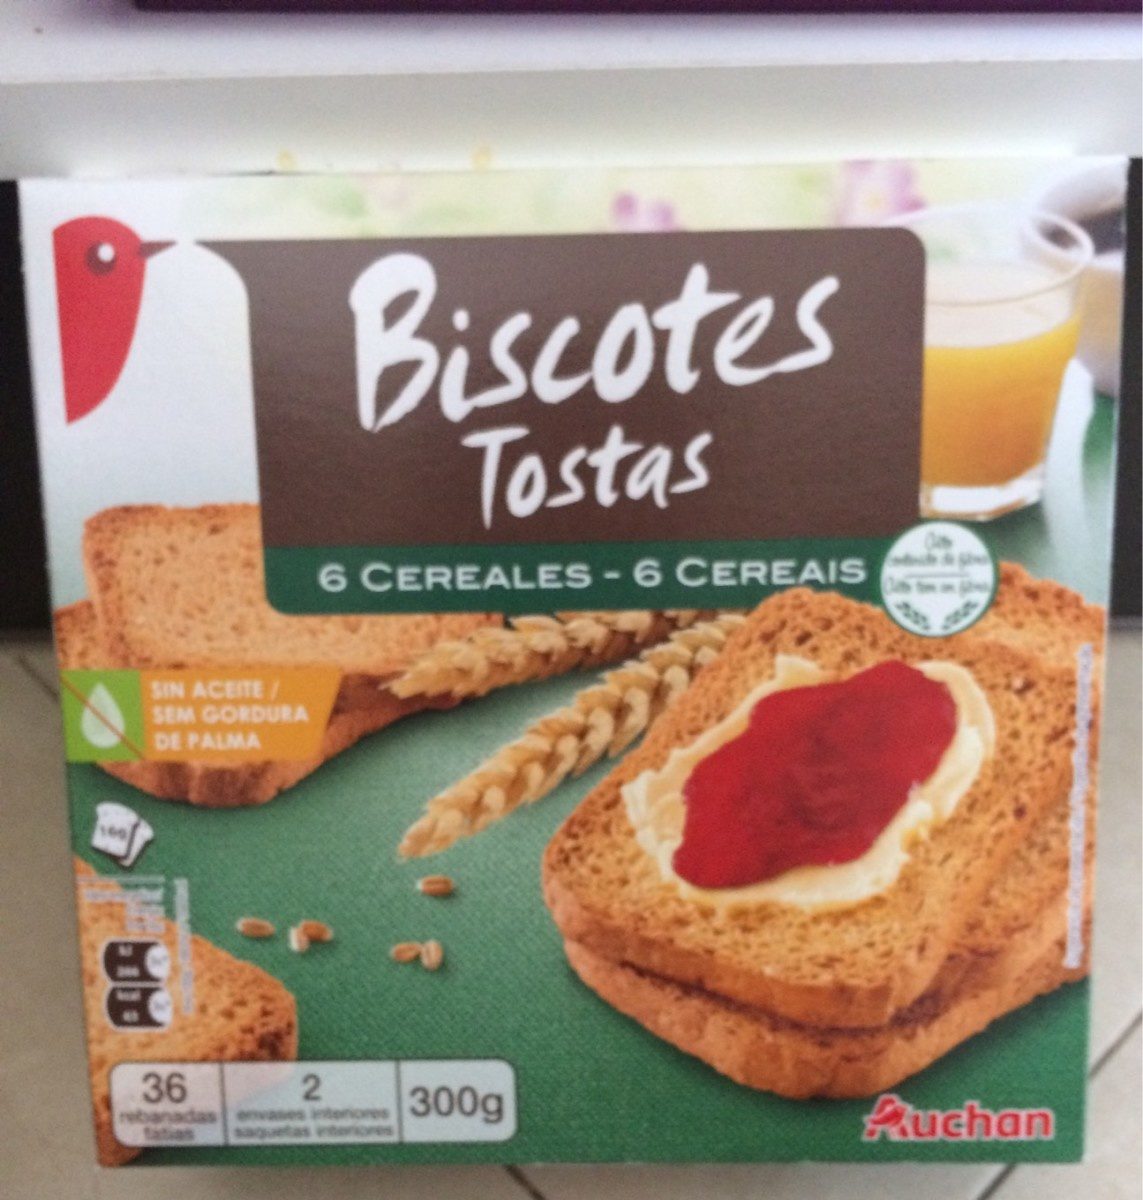 Biscottes tostas aux six céréales - Product - fr